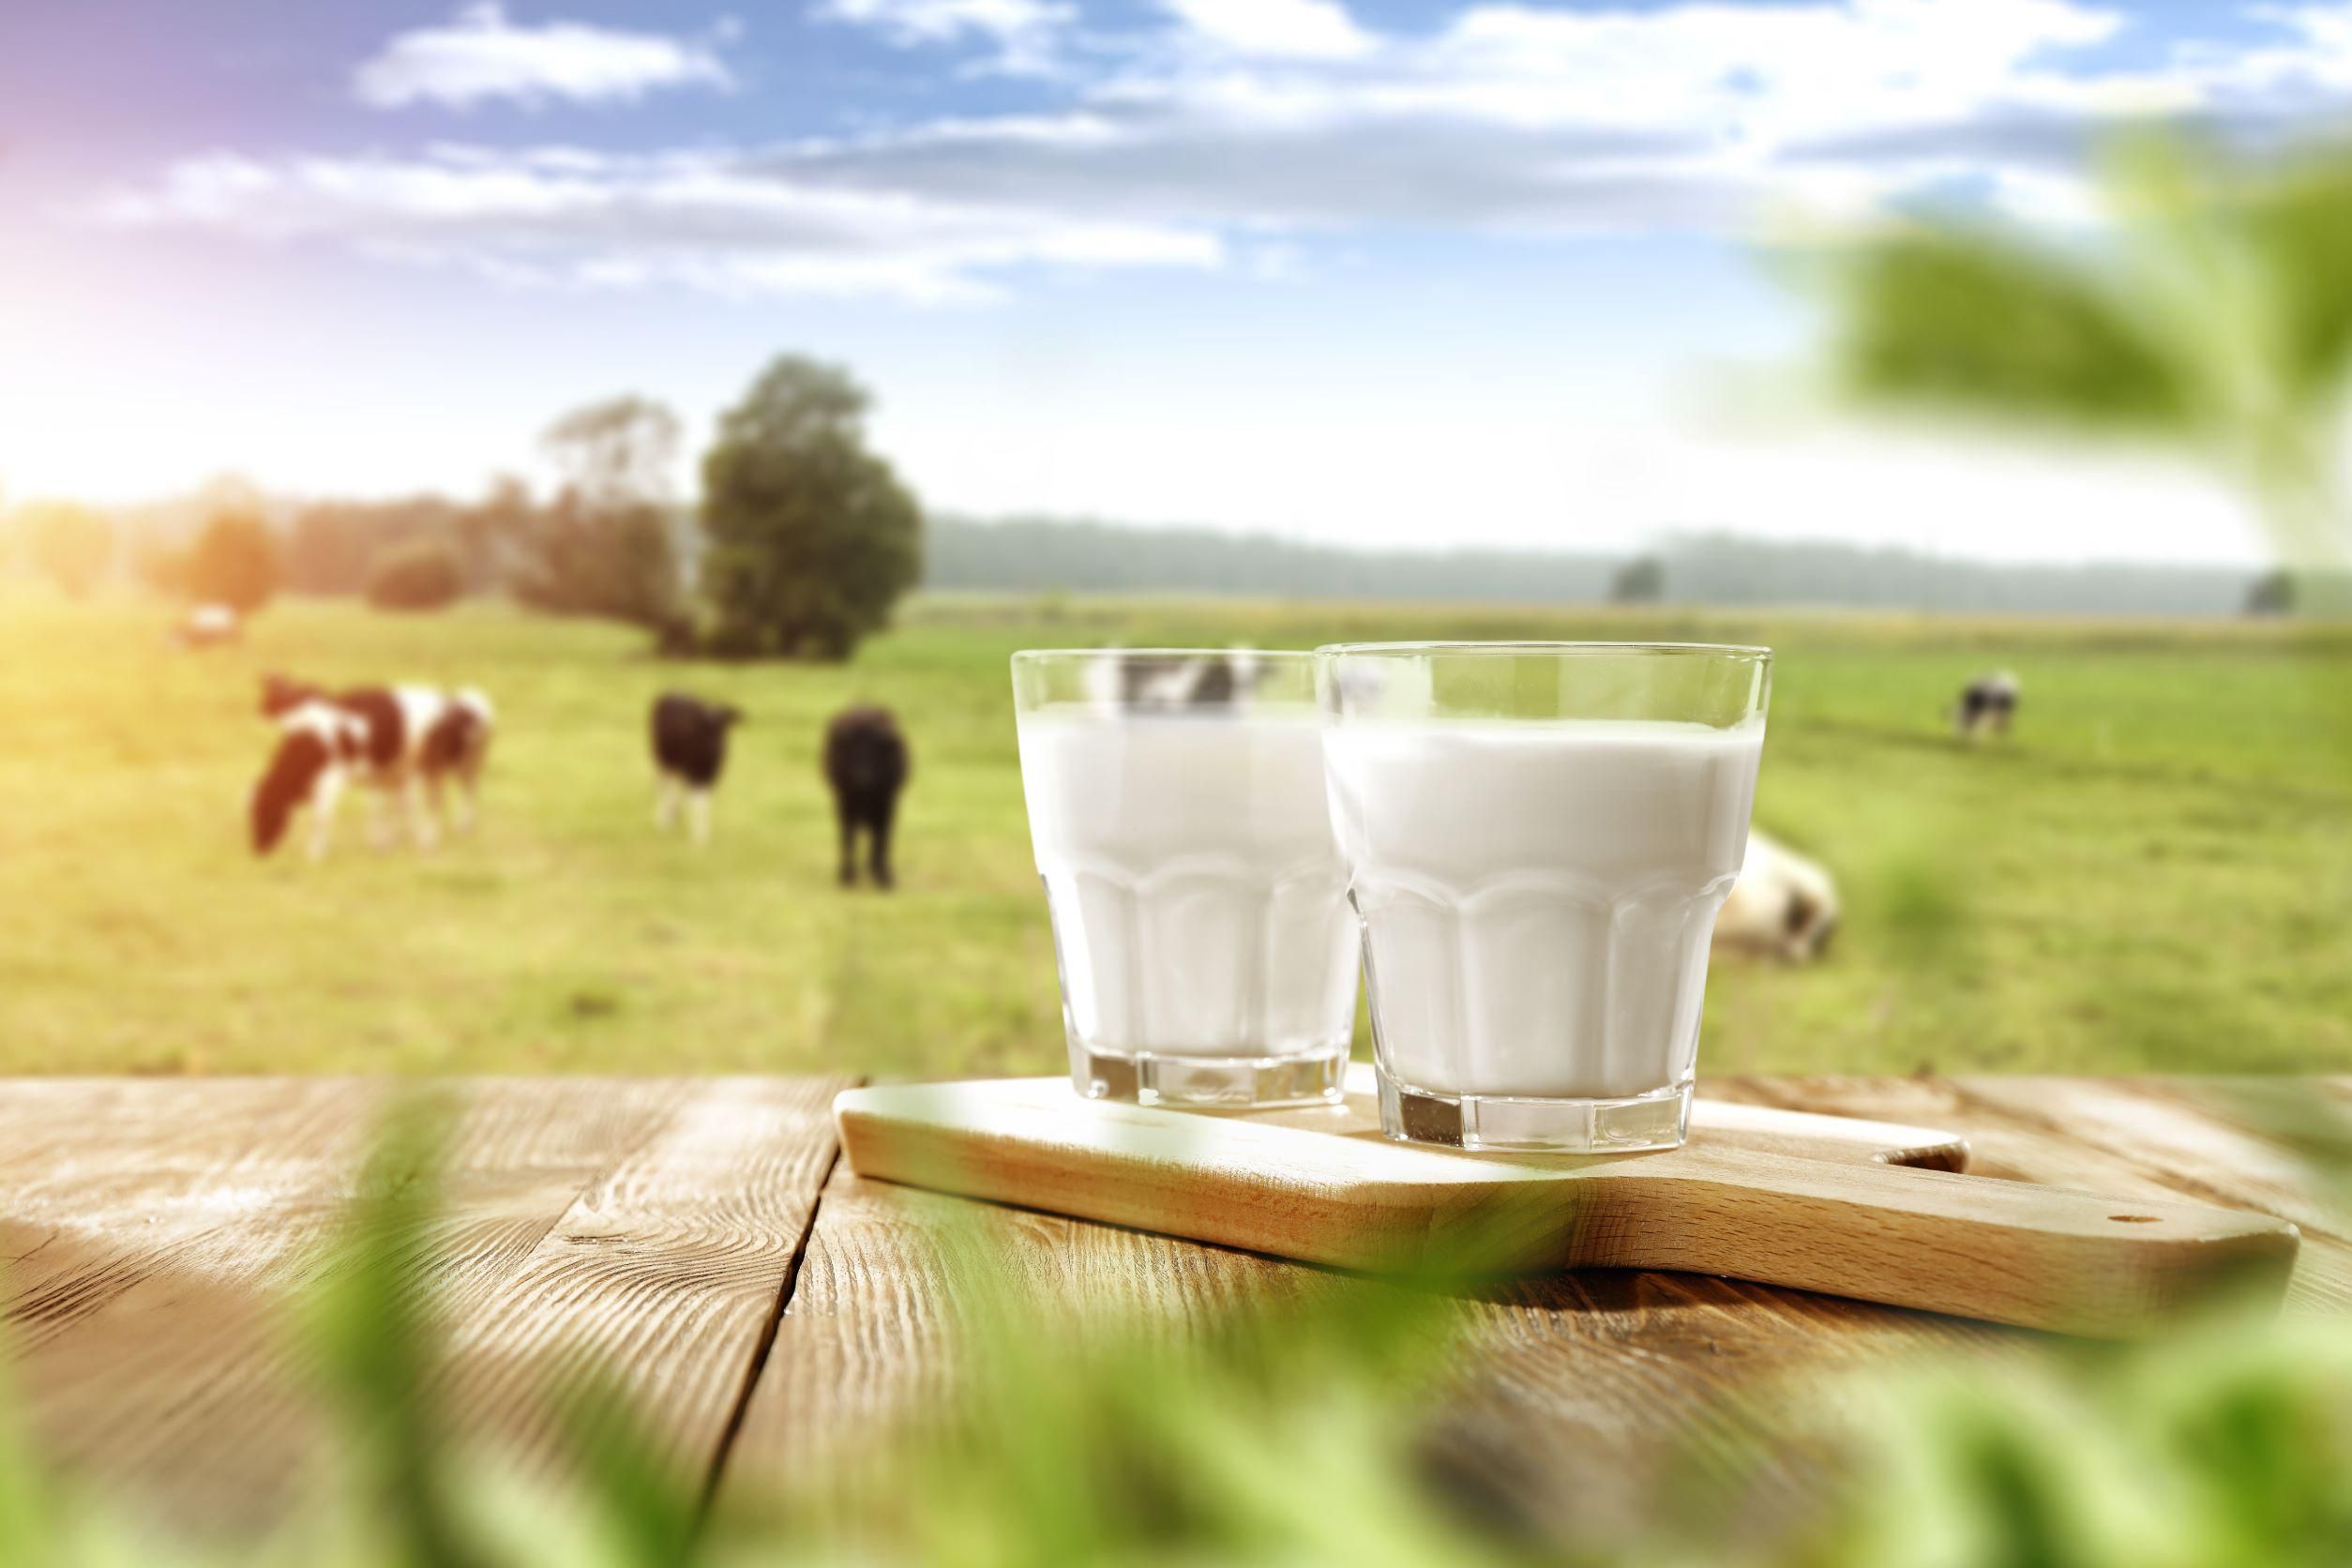 Népszerű termék a tej, és nem várható a fogyasztásának a csökkenése sem